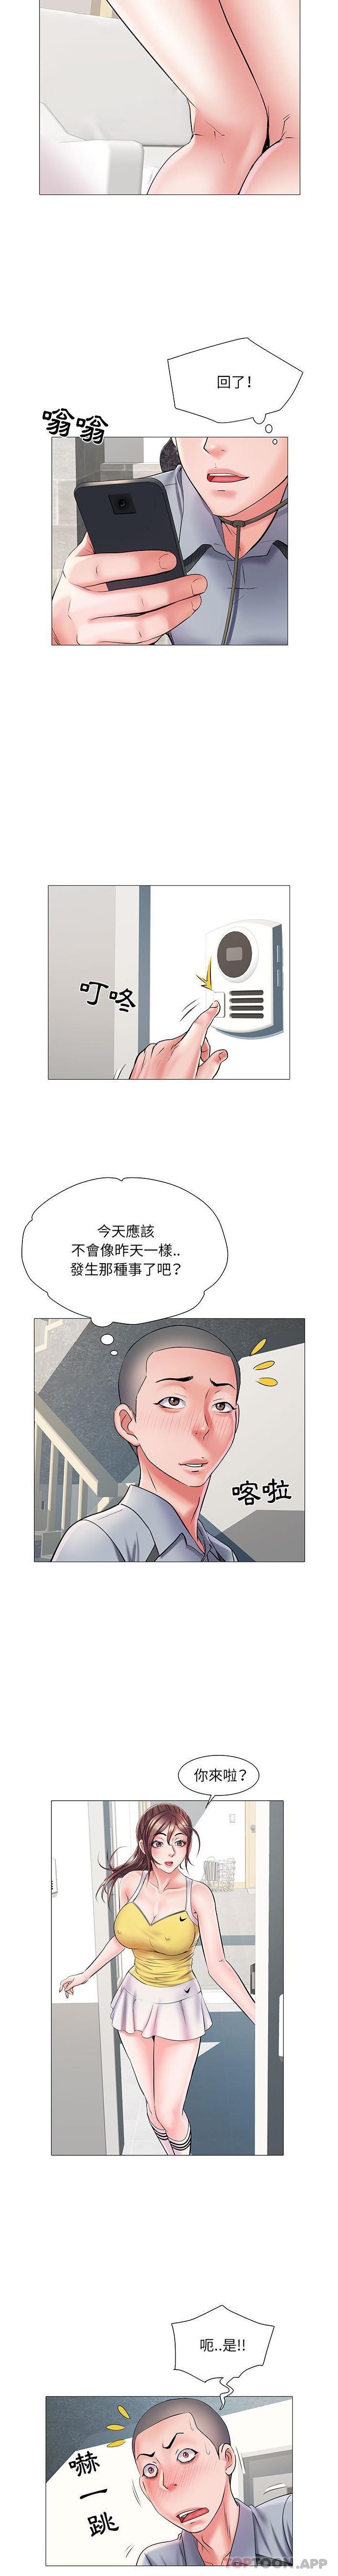 韩国污漫画 不良二等兵 第3话 11